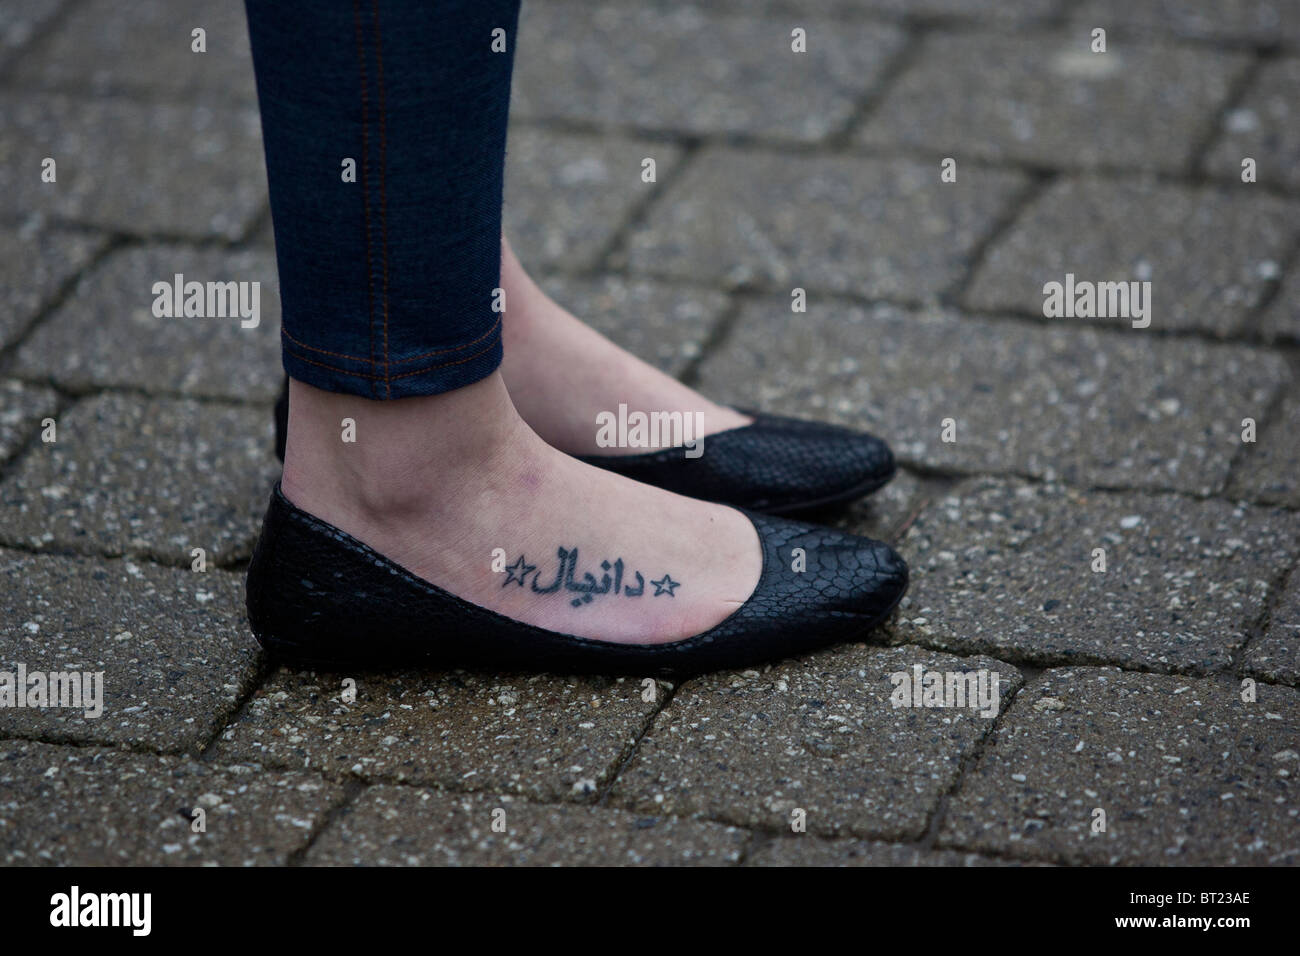 weibliche Füße tätowiert mit arabischer Schrift, schwarze Schuhe  Stockfotografie - Alamy